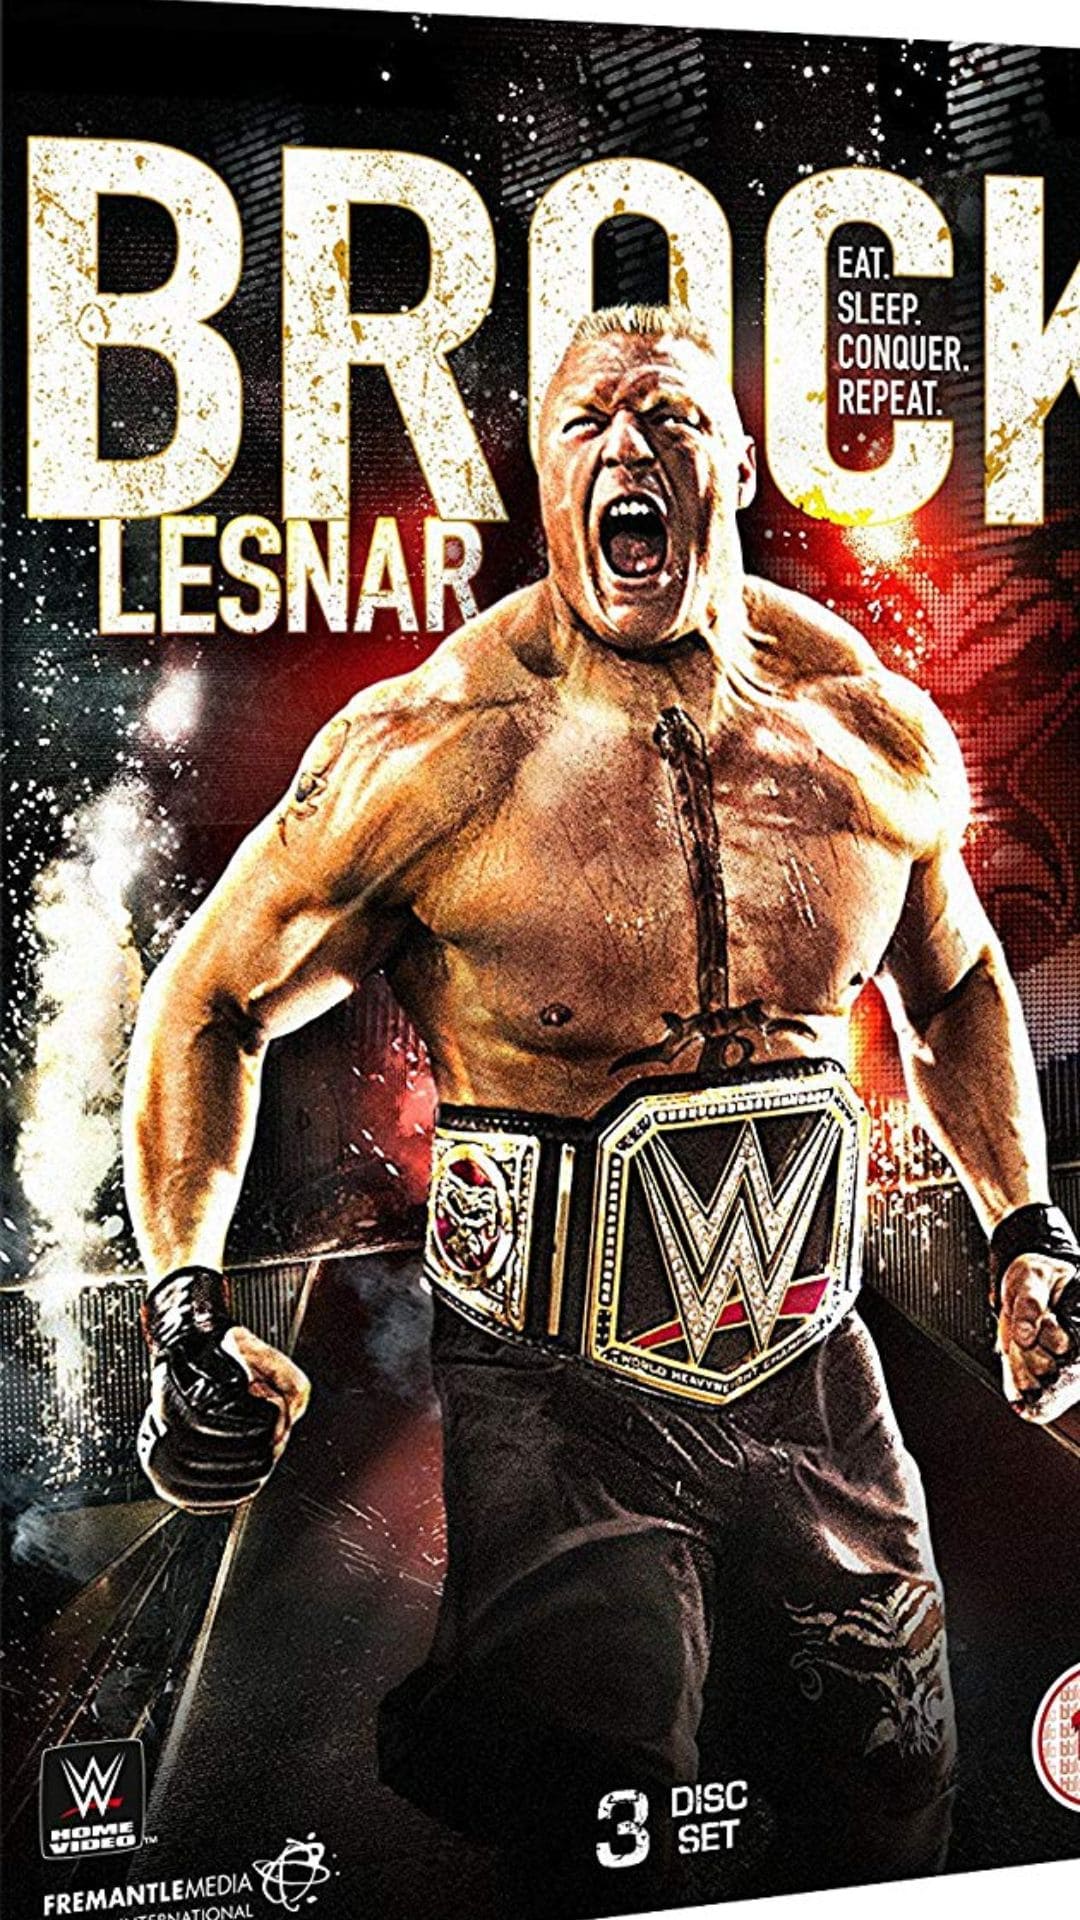 Brock Lesnar Wallpapers - Top 35 Best Brock Lesnar Backgrounds Download